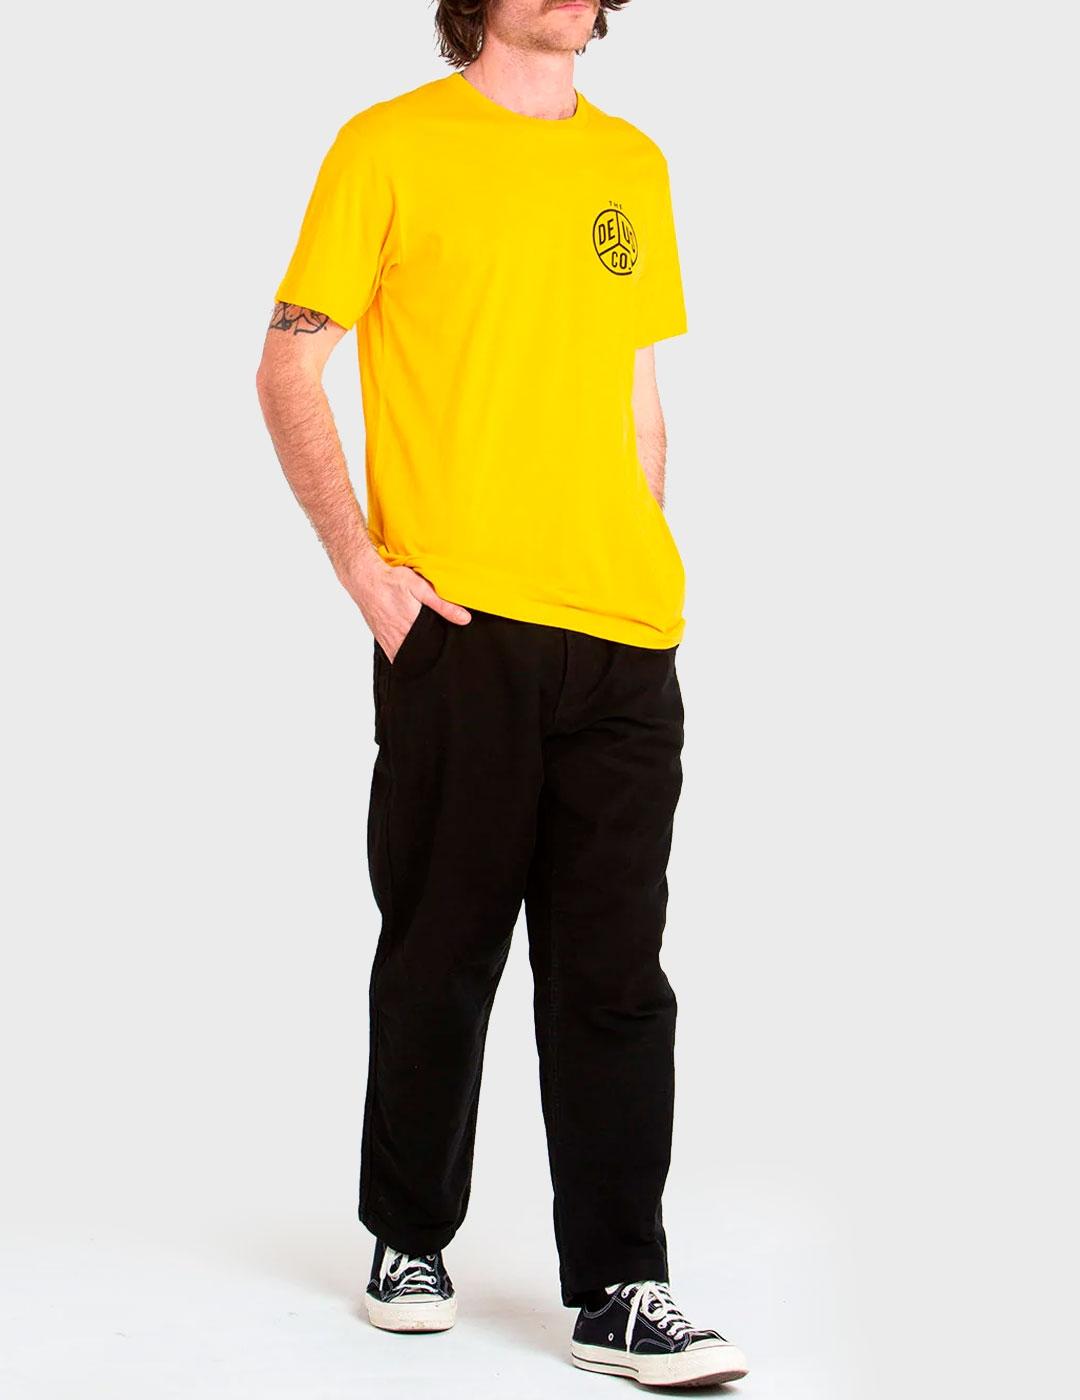 Camiseta Deus Dice Tee Spectra amarilla para hombre